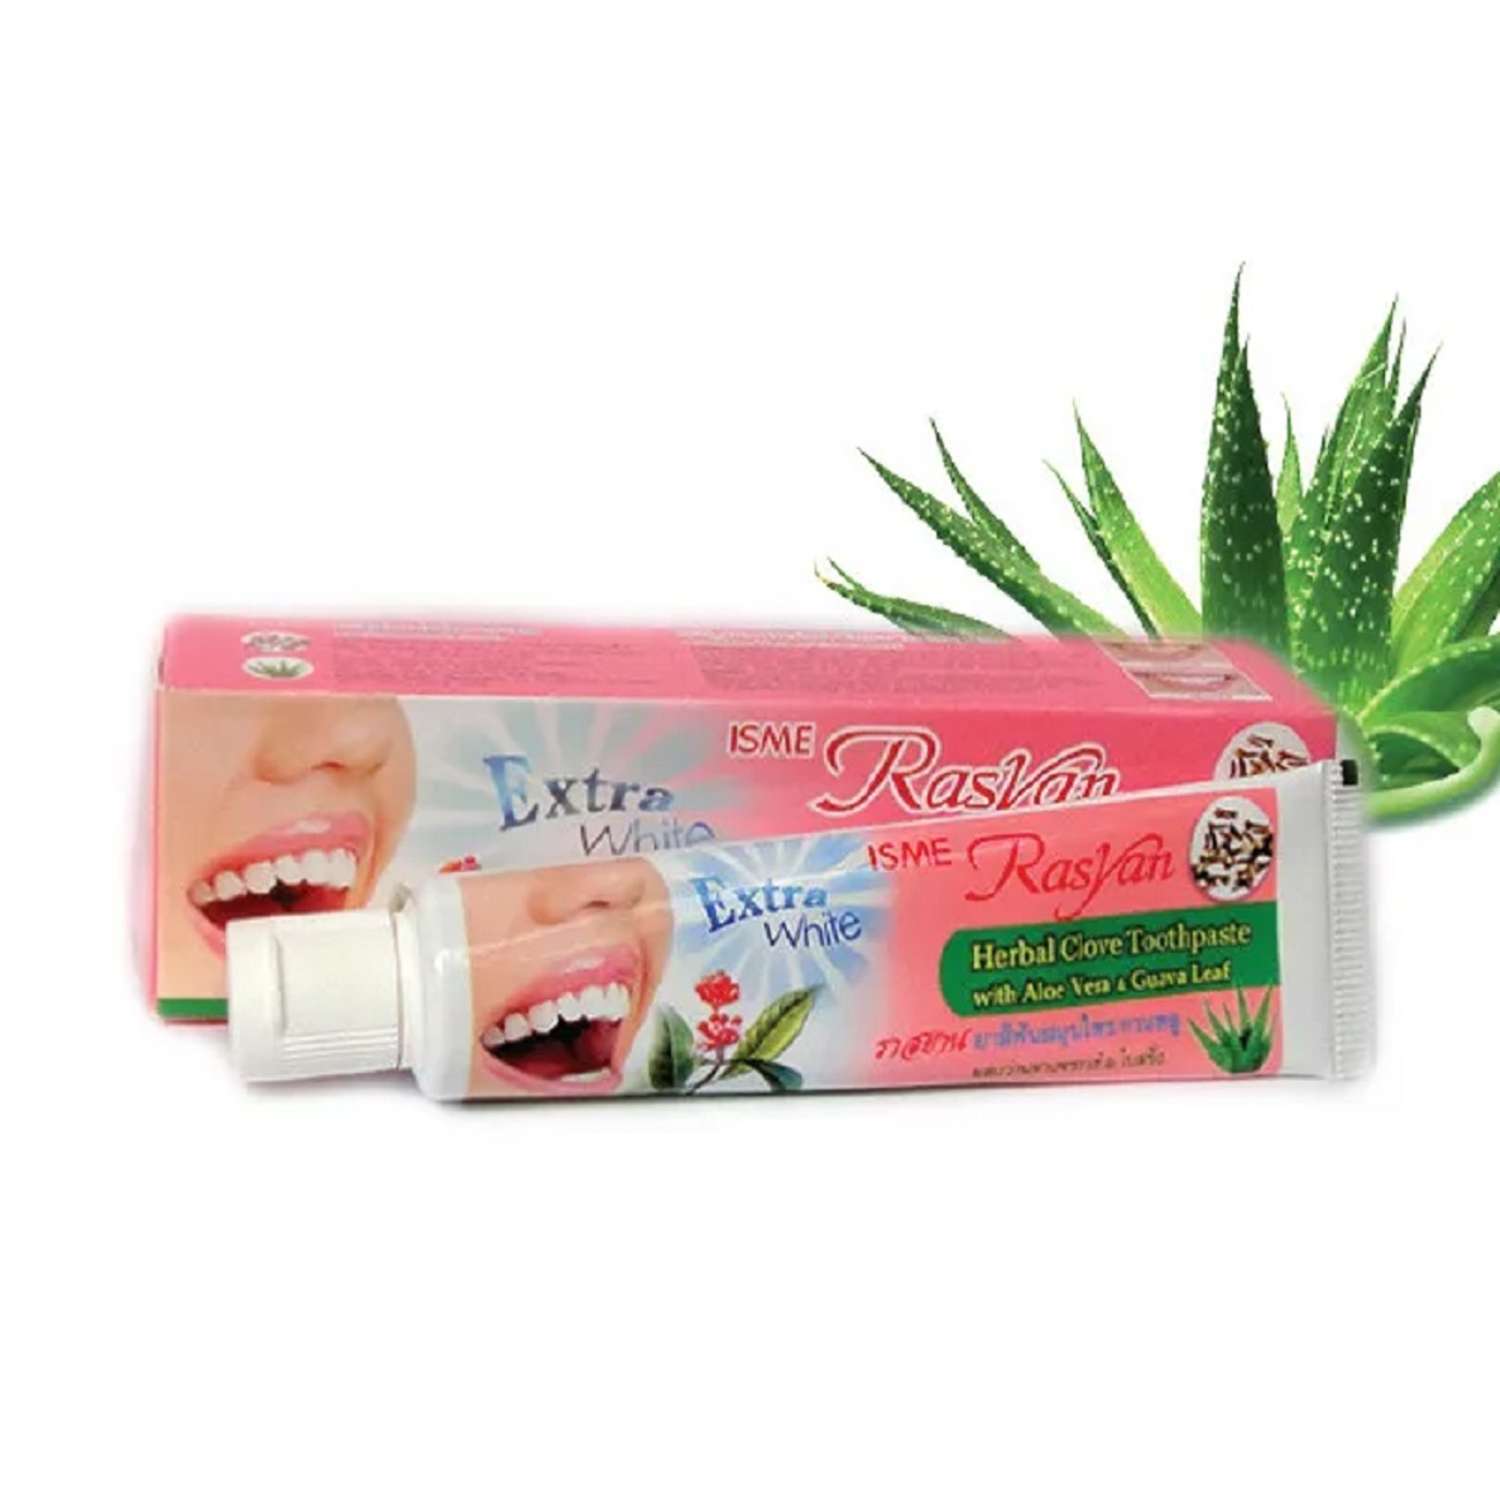 Зубная паста RASYAN тайская травяная Herbal Clove Toothpaste с гвоздикой алоэ и гуавой - фото 6